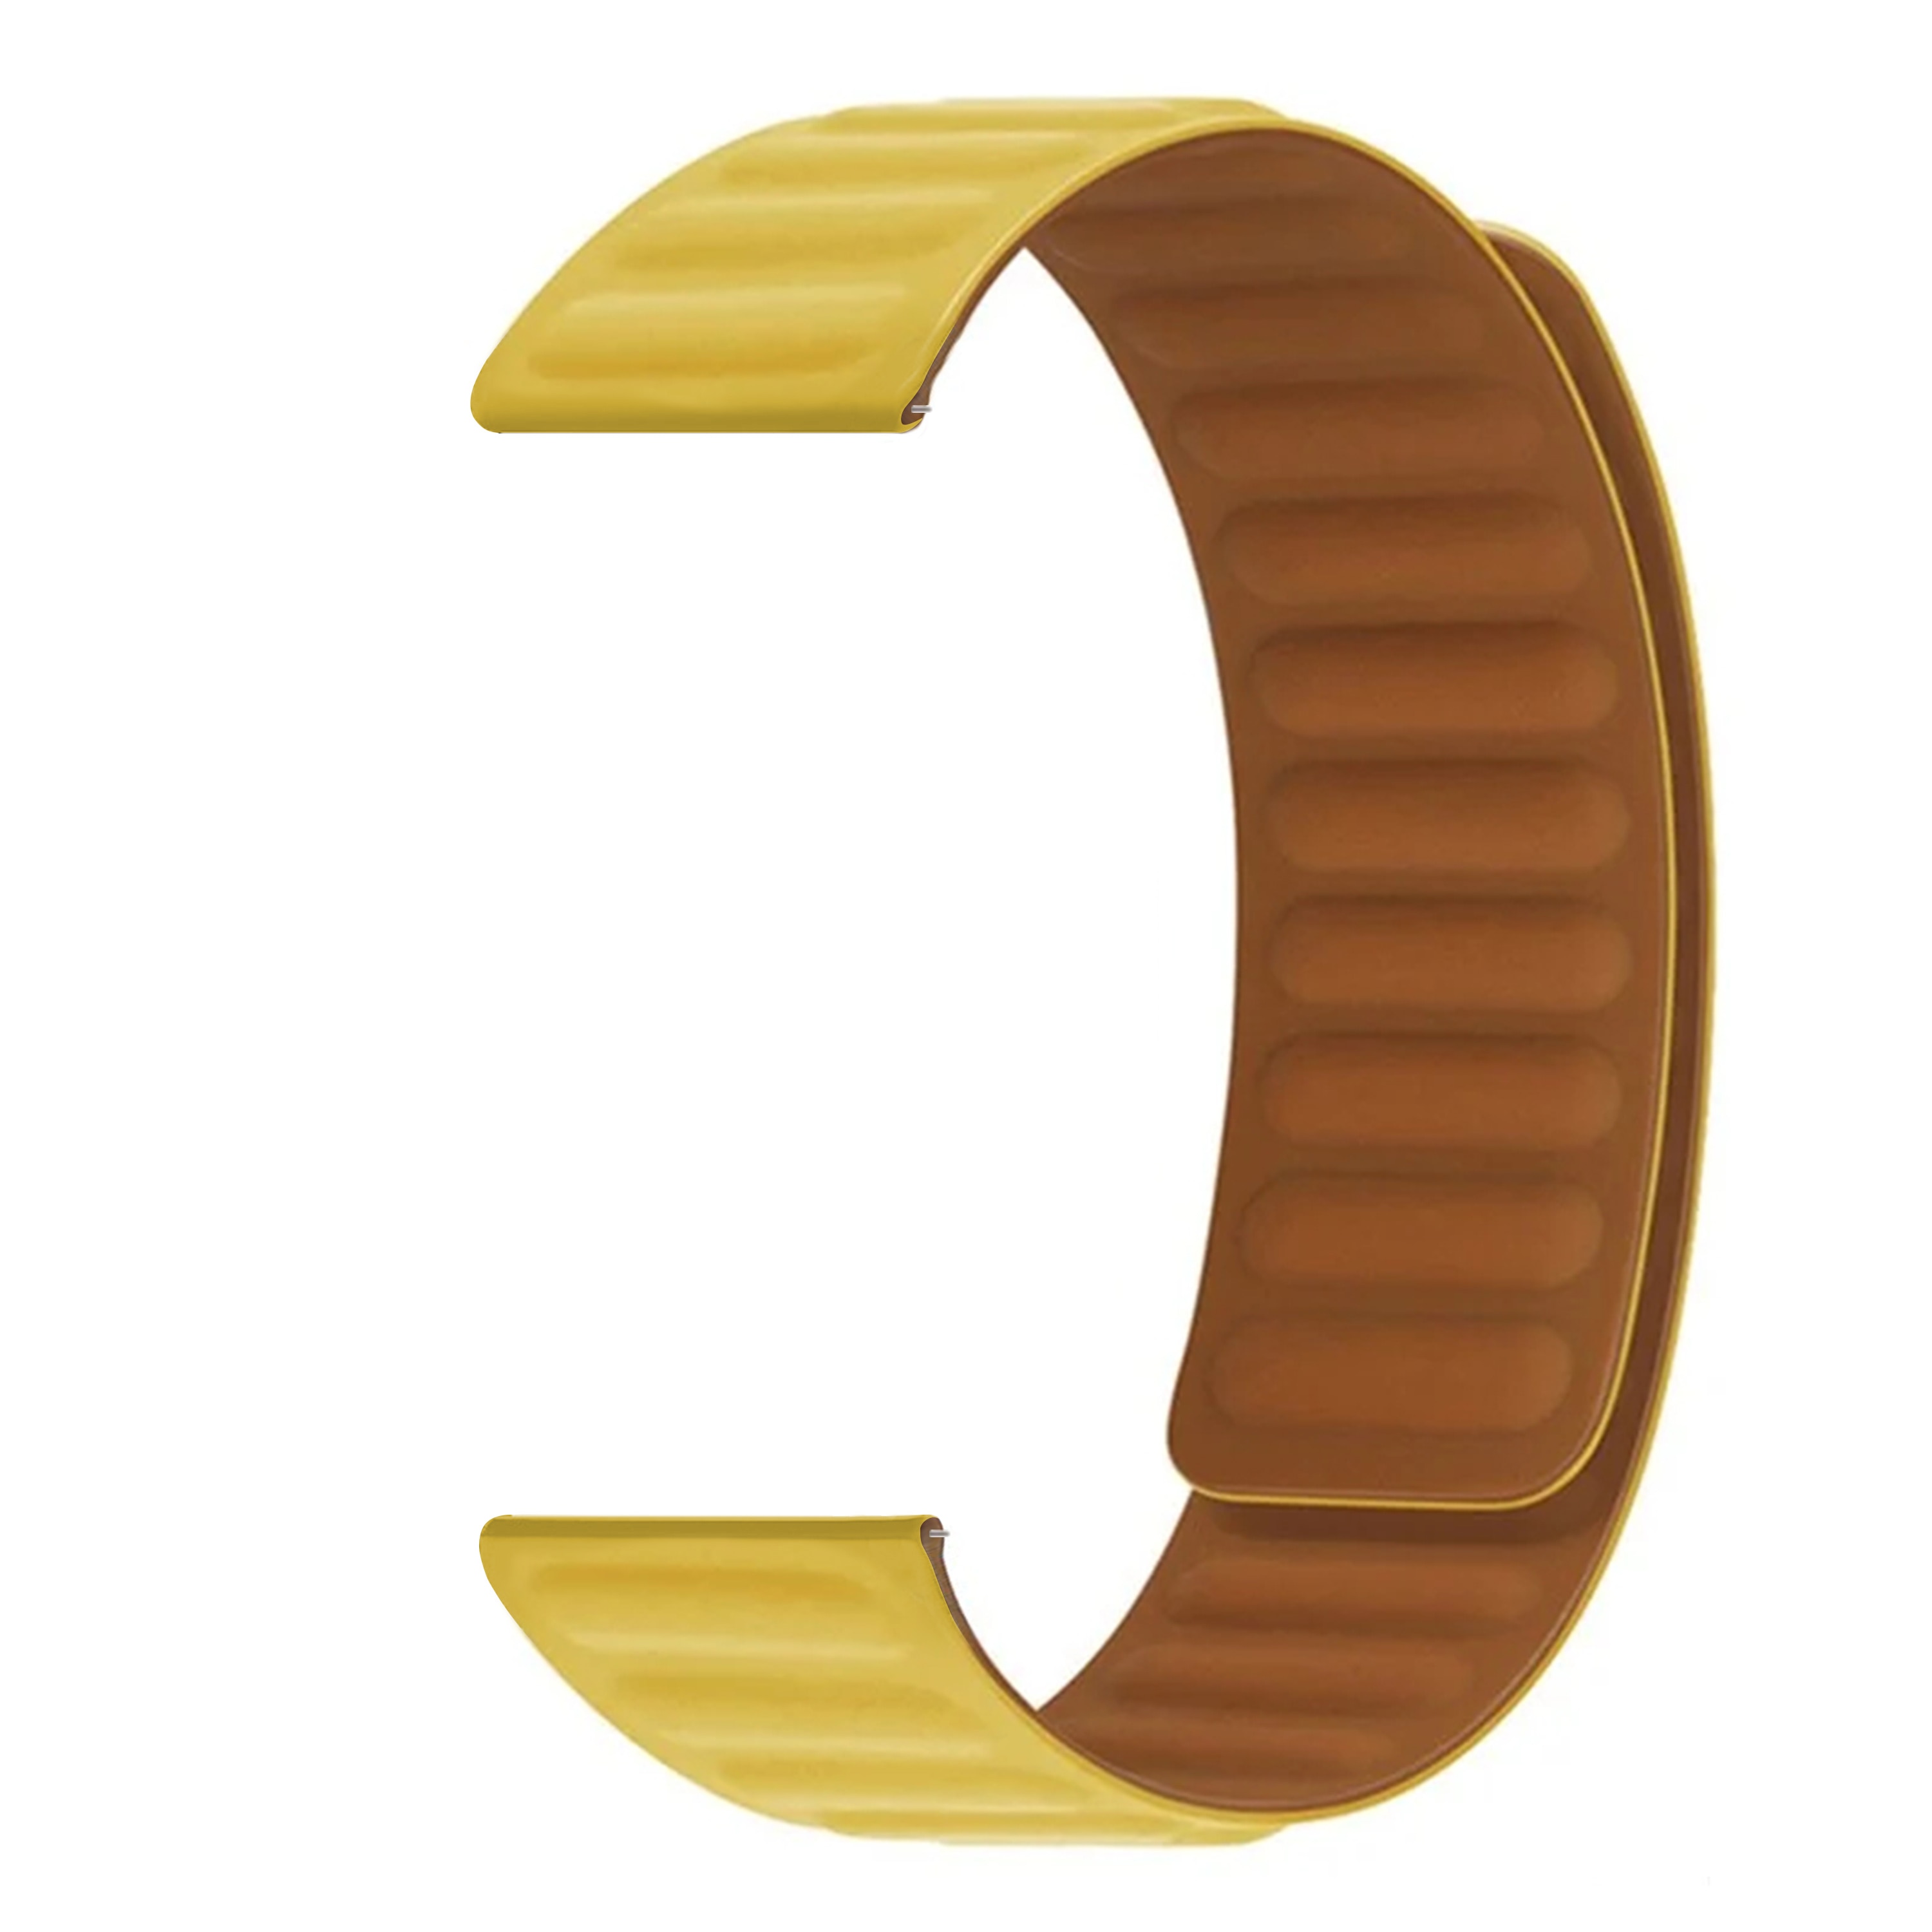 Bracelet magnétique en silicone Garmin Forerunner 165, jaune